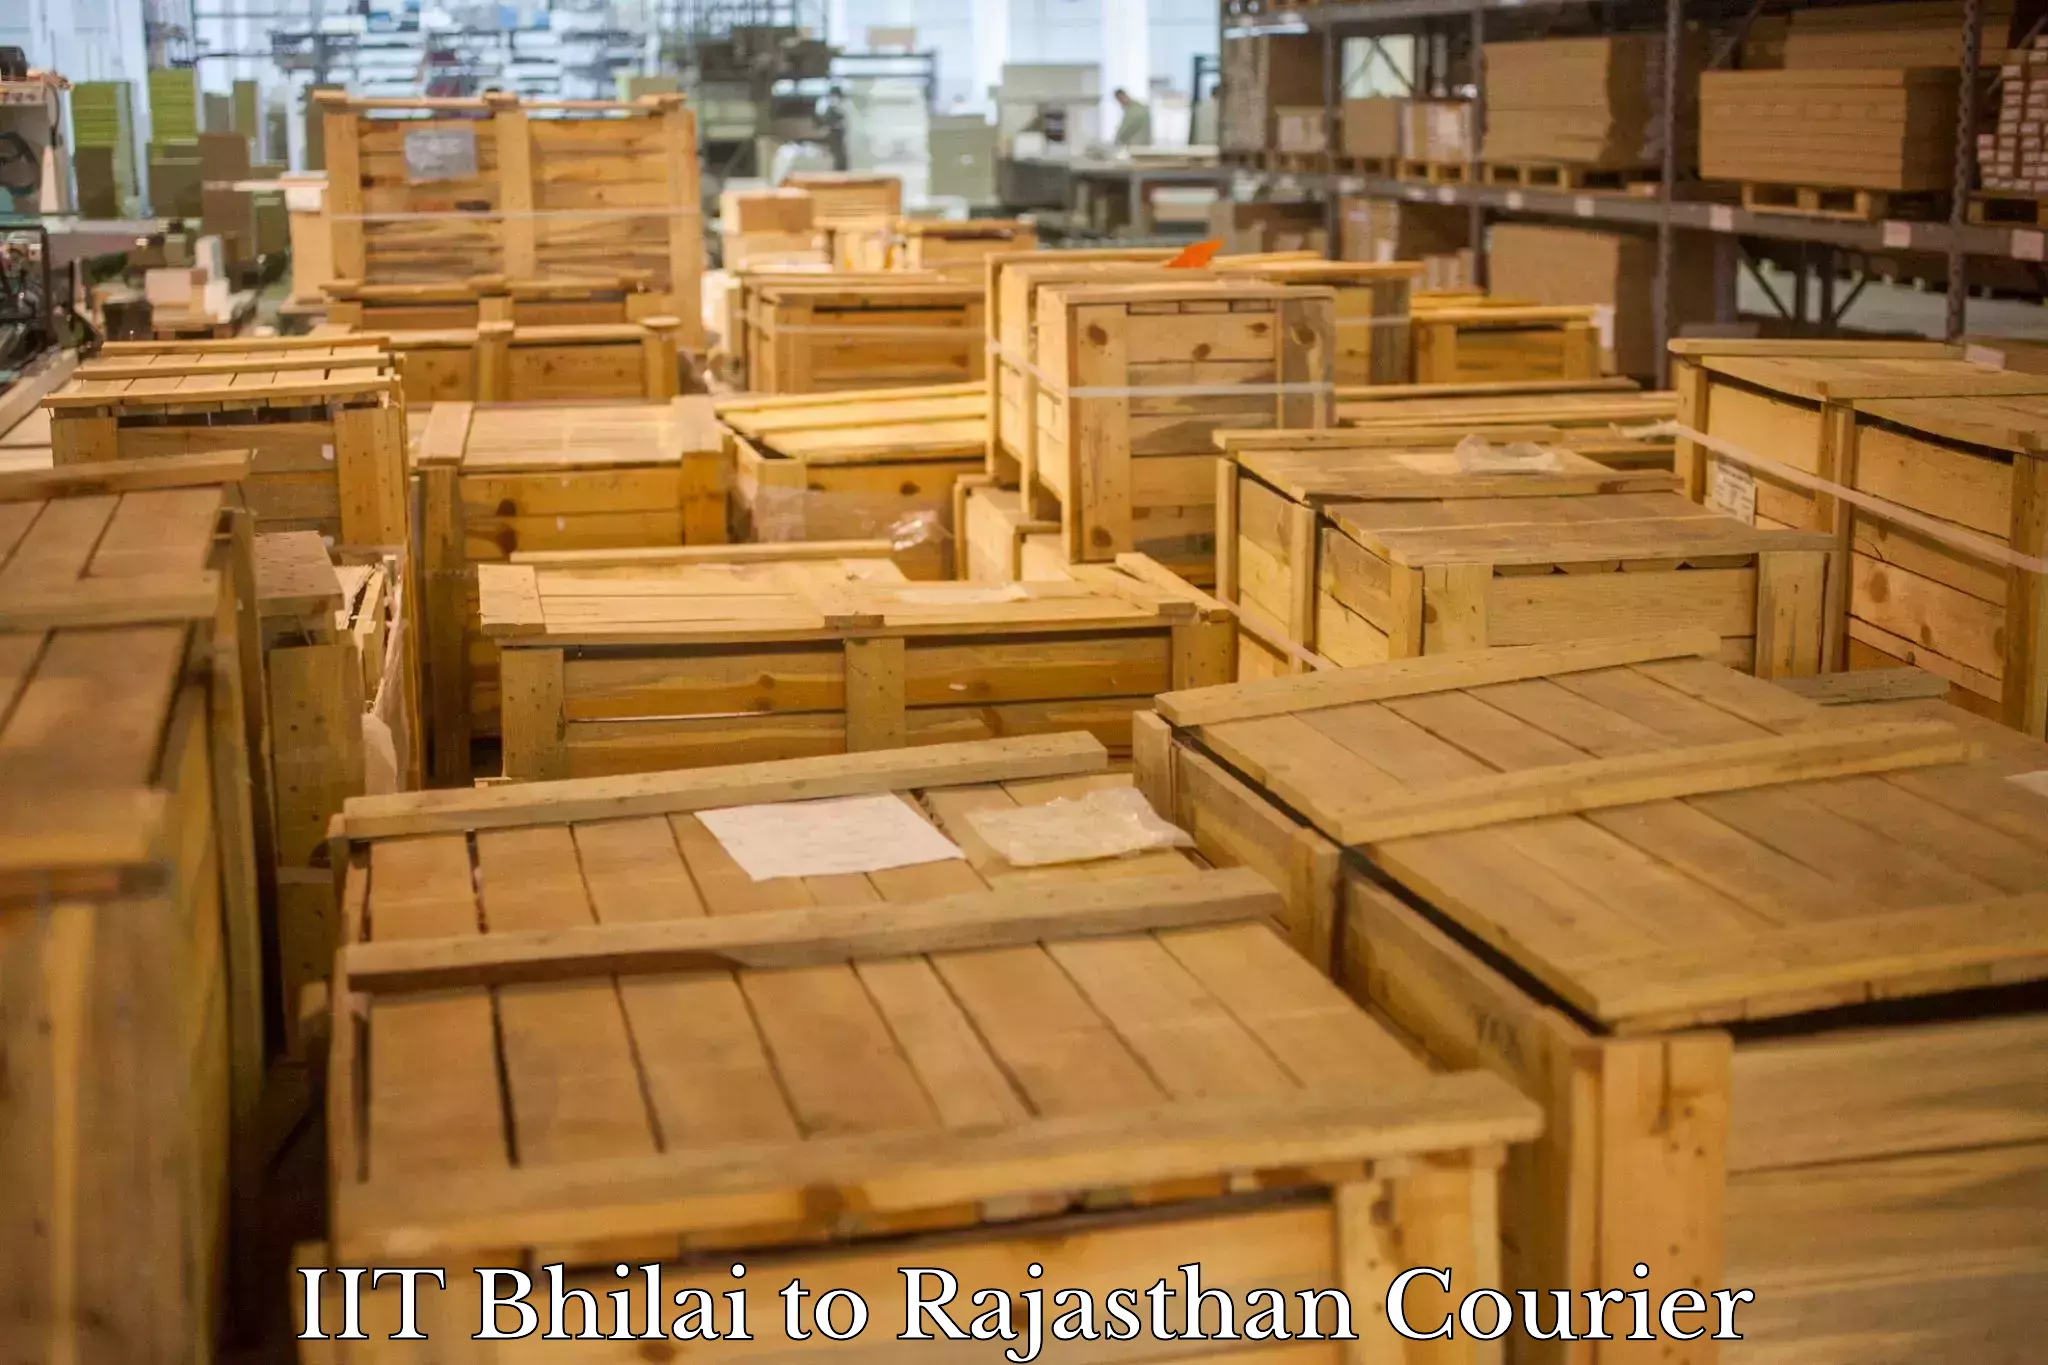 Professional courier services IIT Bhilai to Bansur